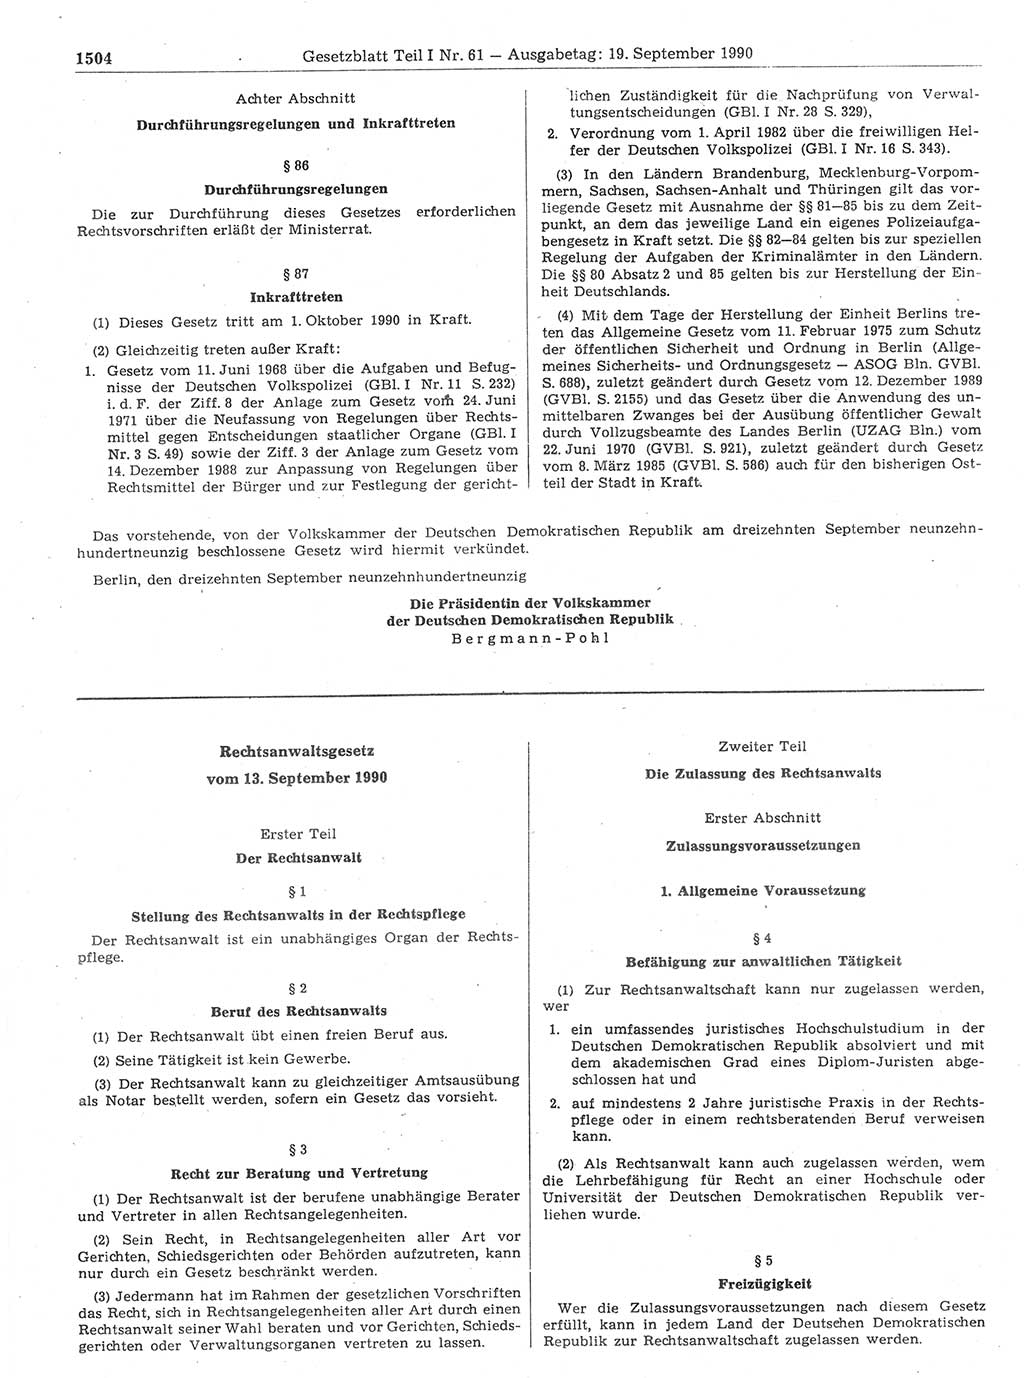 Gesetzblatt (GBl.) der Deutschen Demokratischen Republik (DDR) Teil Ⅰ 1990, Seite 1504 (GBl. DDR Ⅰ 1990, S. 1504)